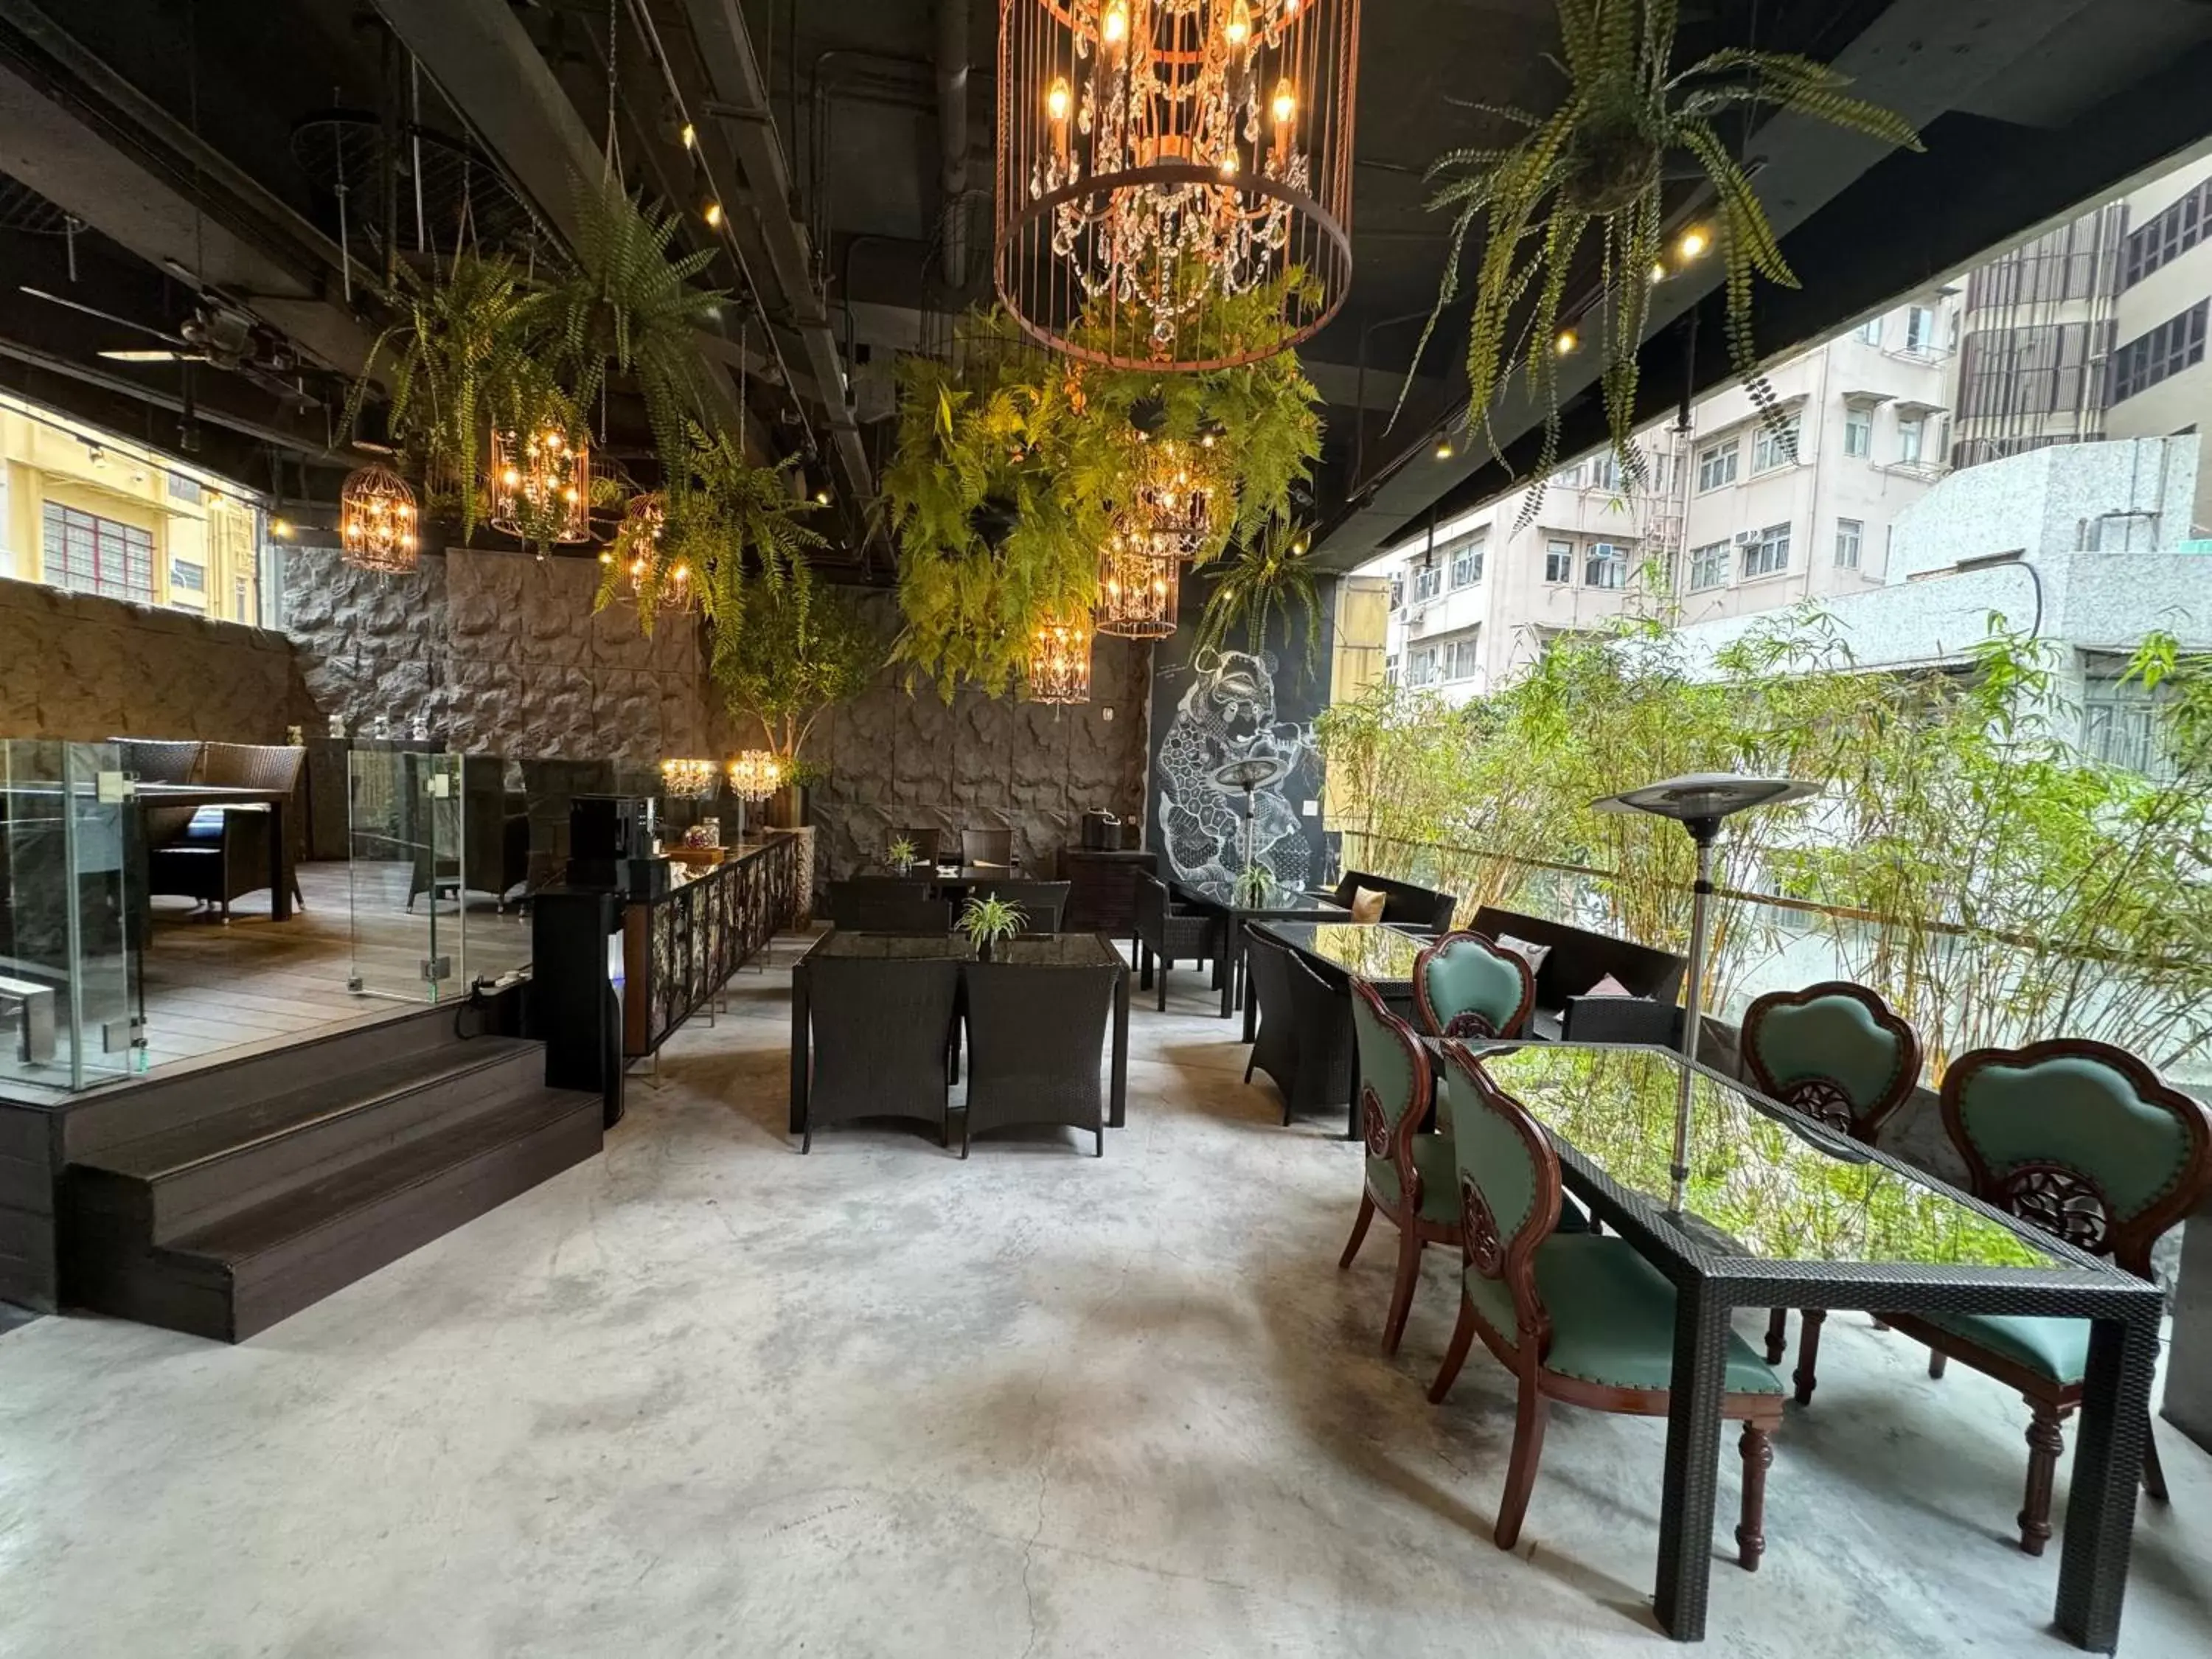 Banquet/Function facilities in Lan Kwai Fong Hotel - Kau U Fong